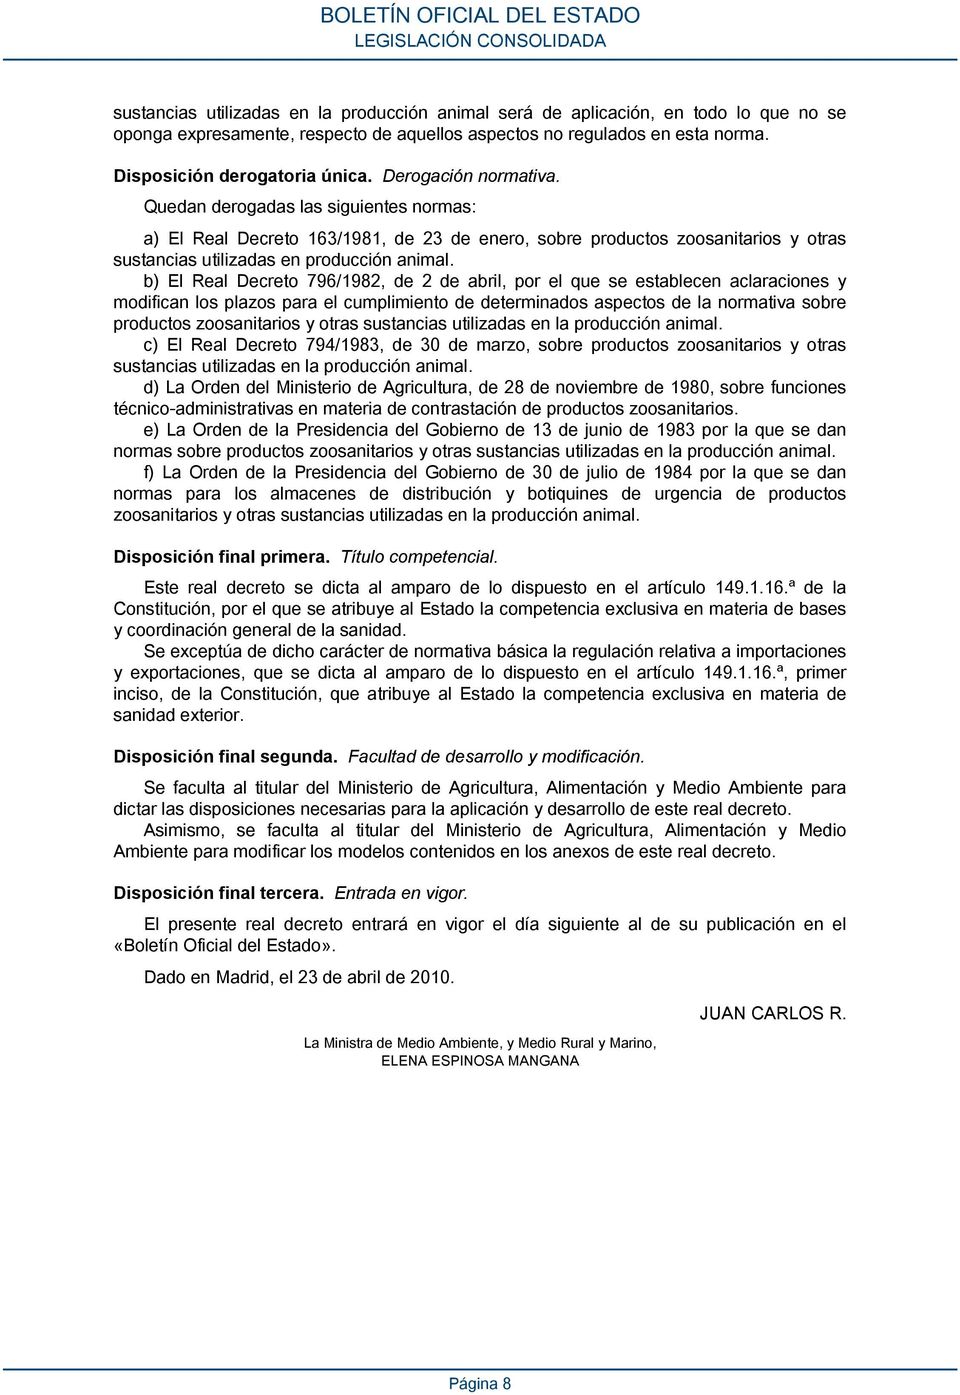 b) El Real Decreto 796/1982, de 2 de abril, por el que se establecen aclaraciones y modifican los plazos para el cumplimiento de determinados aspectos de la normativa sobre productos zoosanitarios y